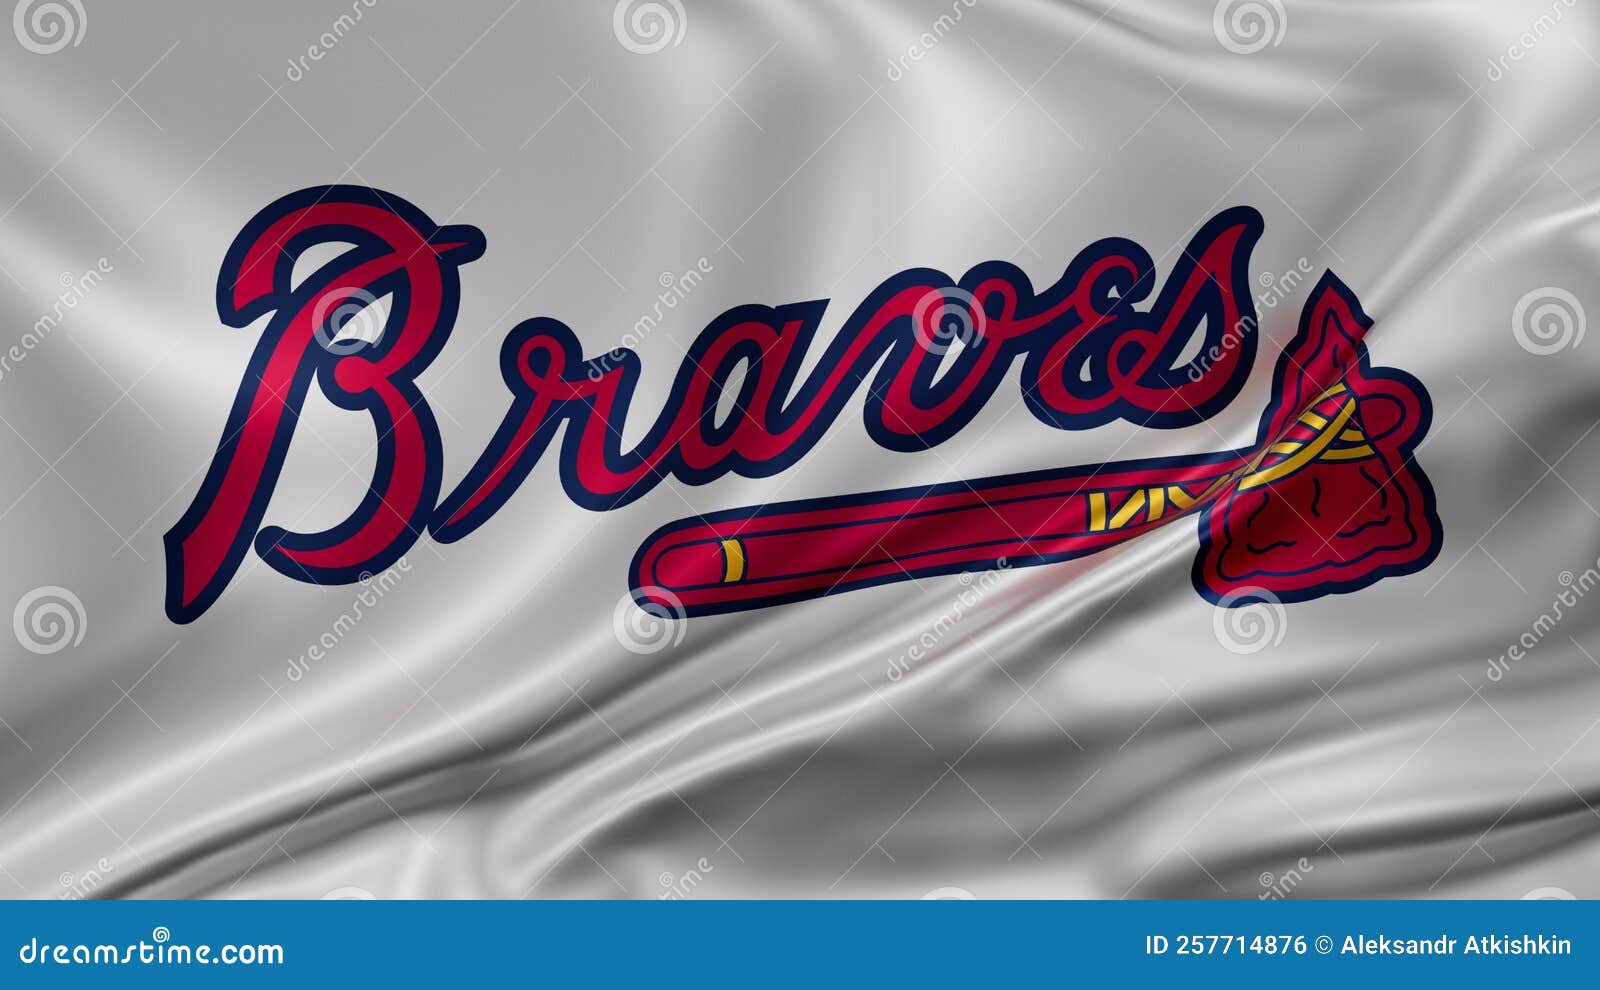 Atlanta Braves Stock Illustrations – 32 Atlanta Braves Stock